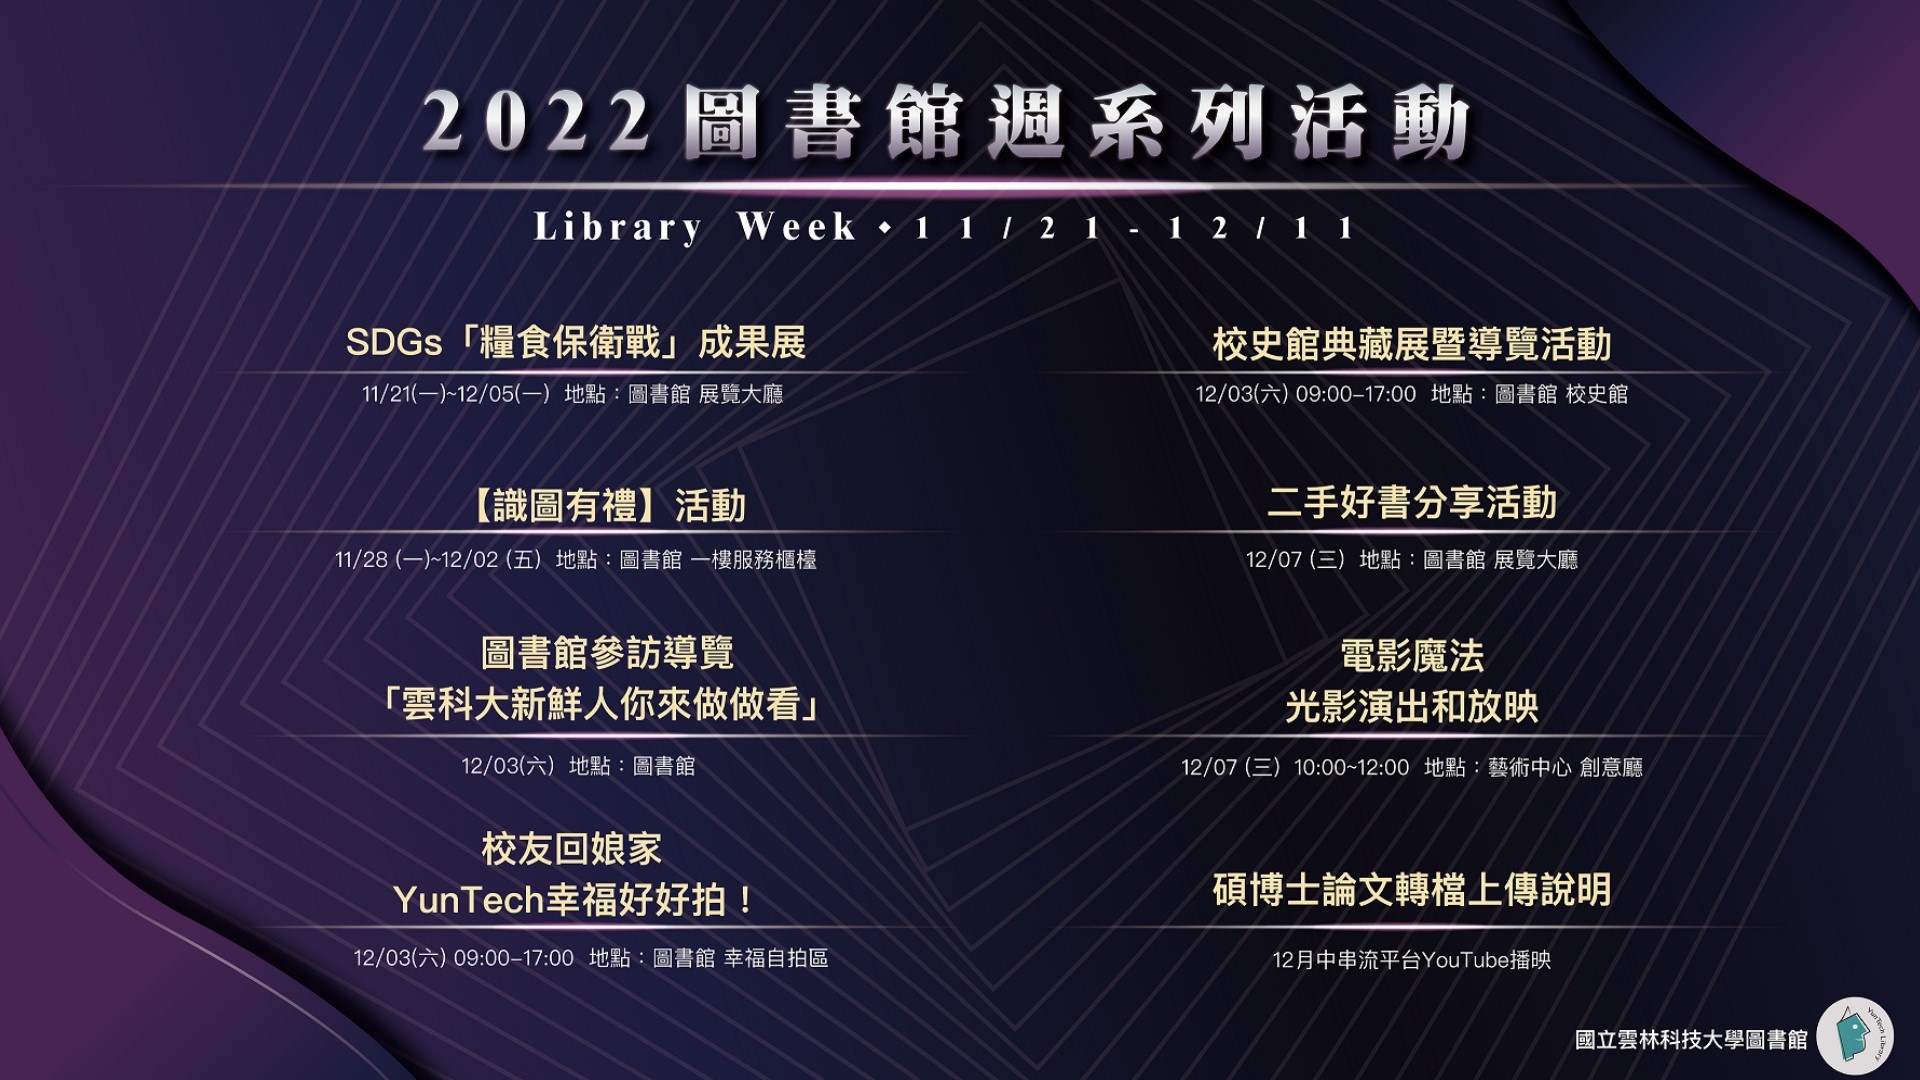 歡迎參加2022圖書館週系列活動